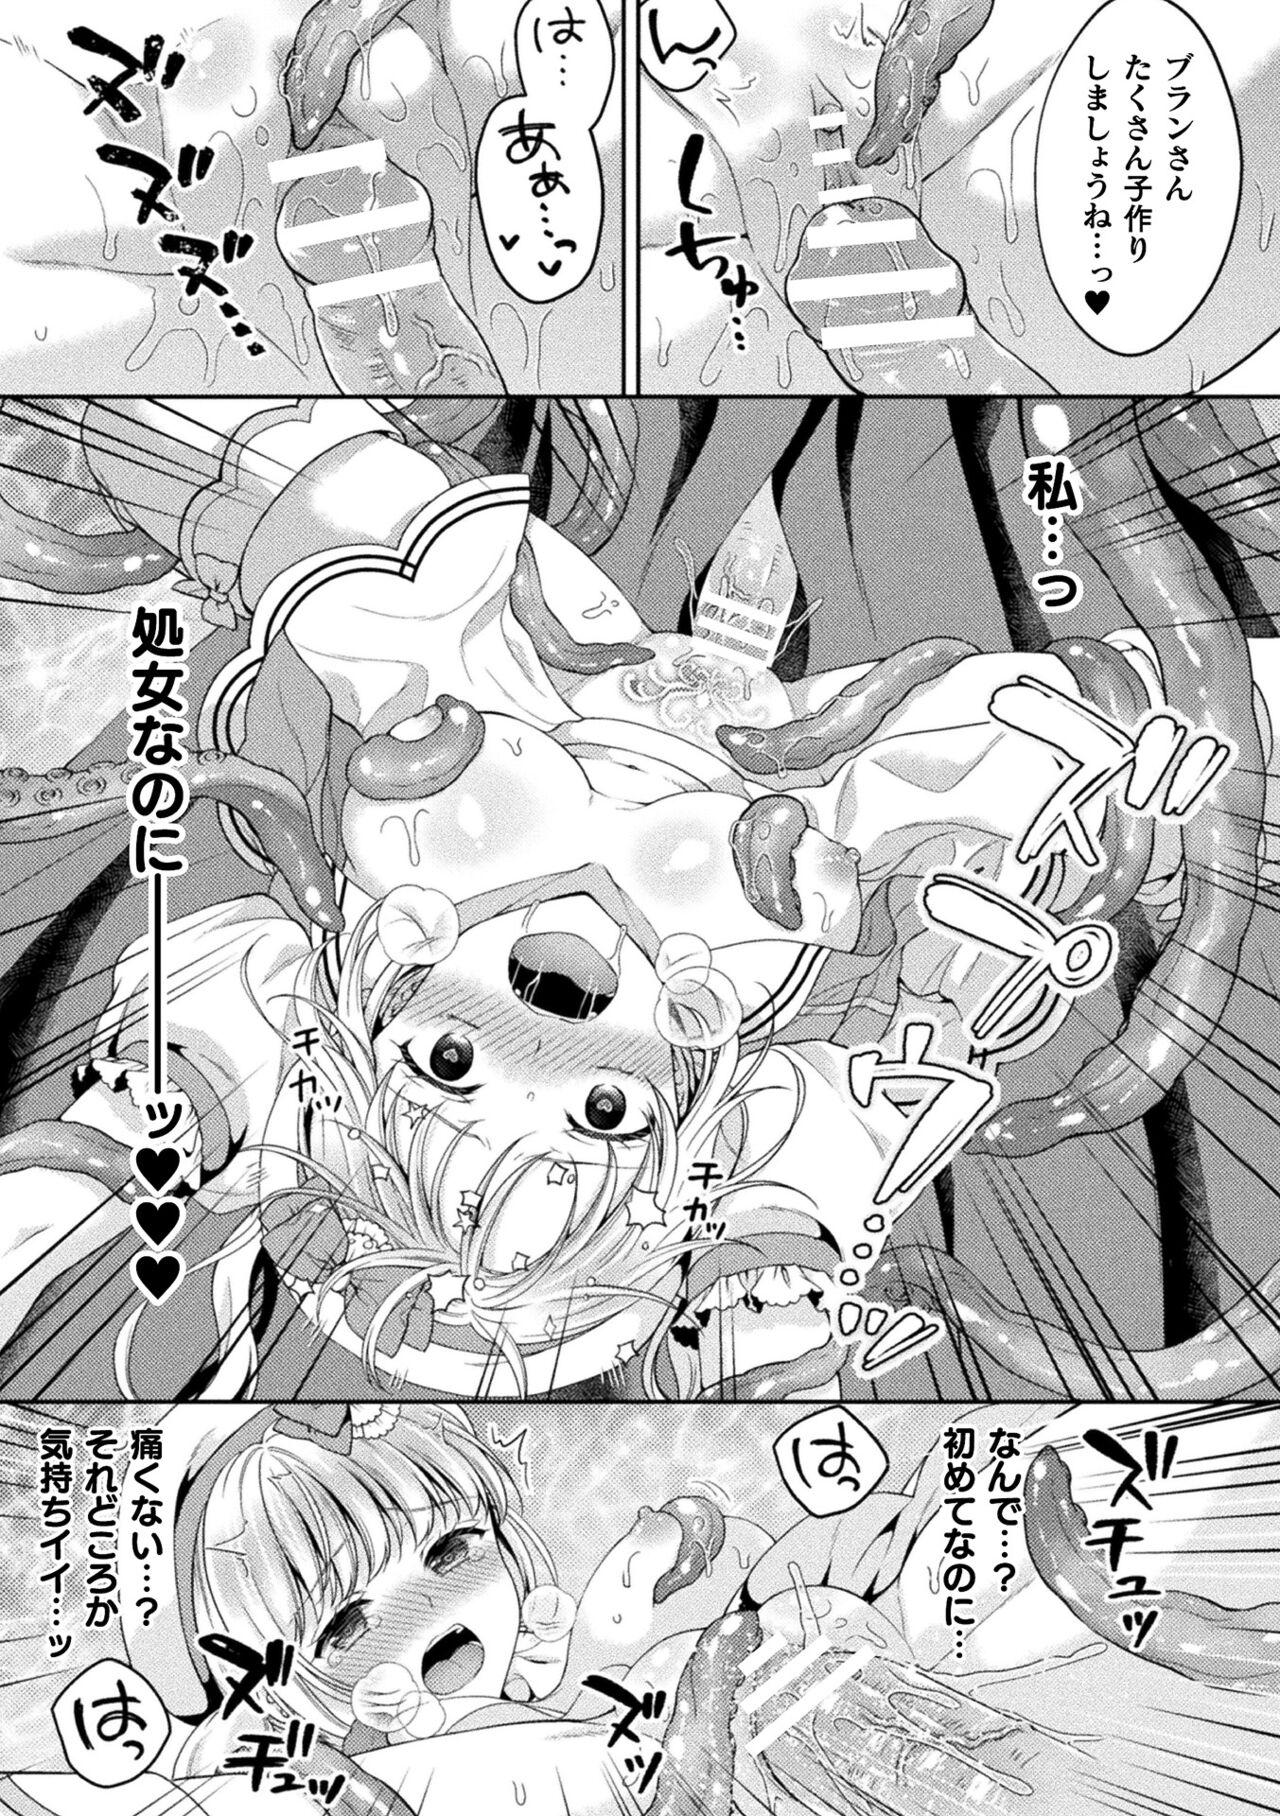 2D Comic Magazine Inmon o Tsukerareta Bishoujo-tachi ga Sanran Acme Ochi! Vol. 1 54